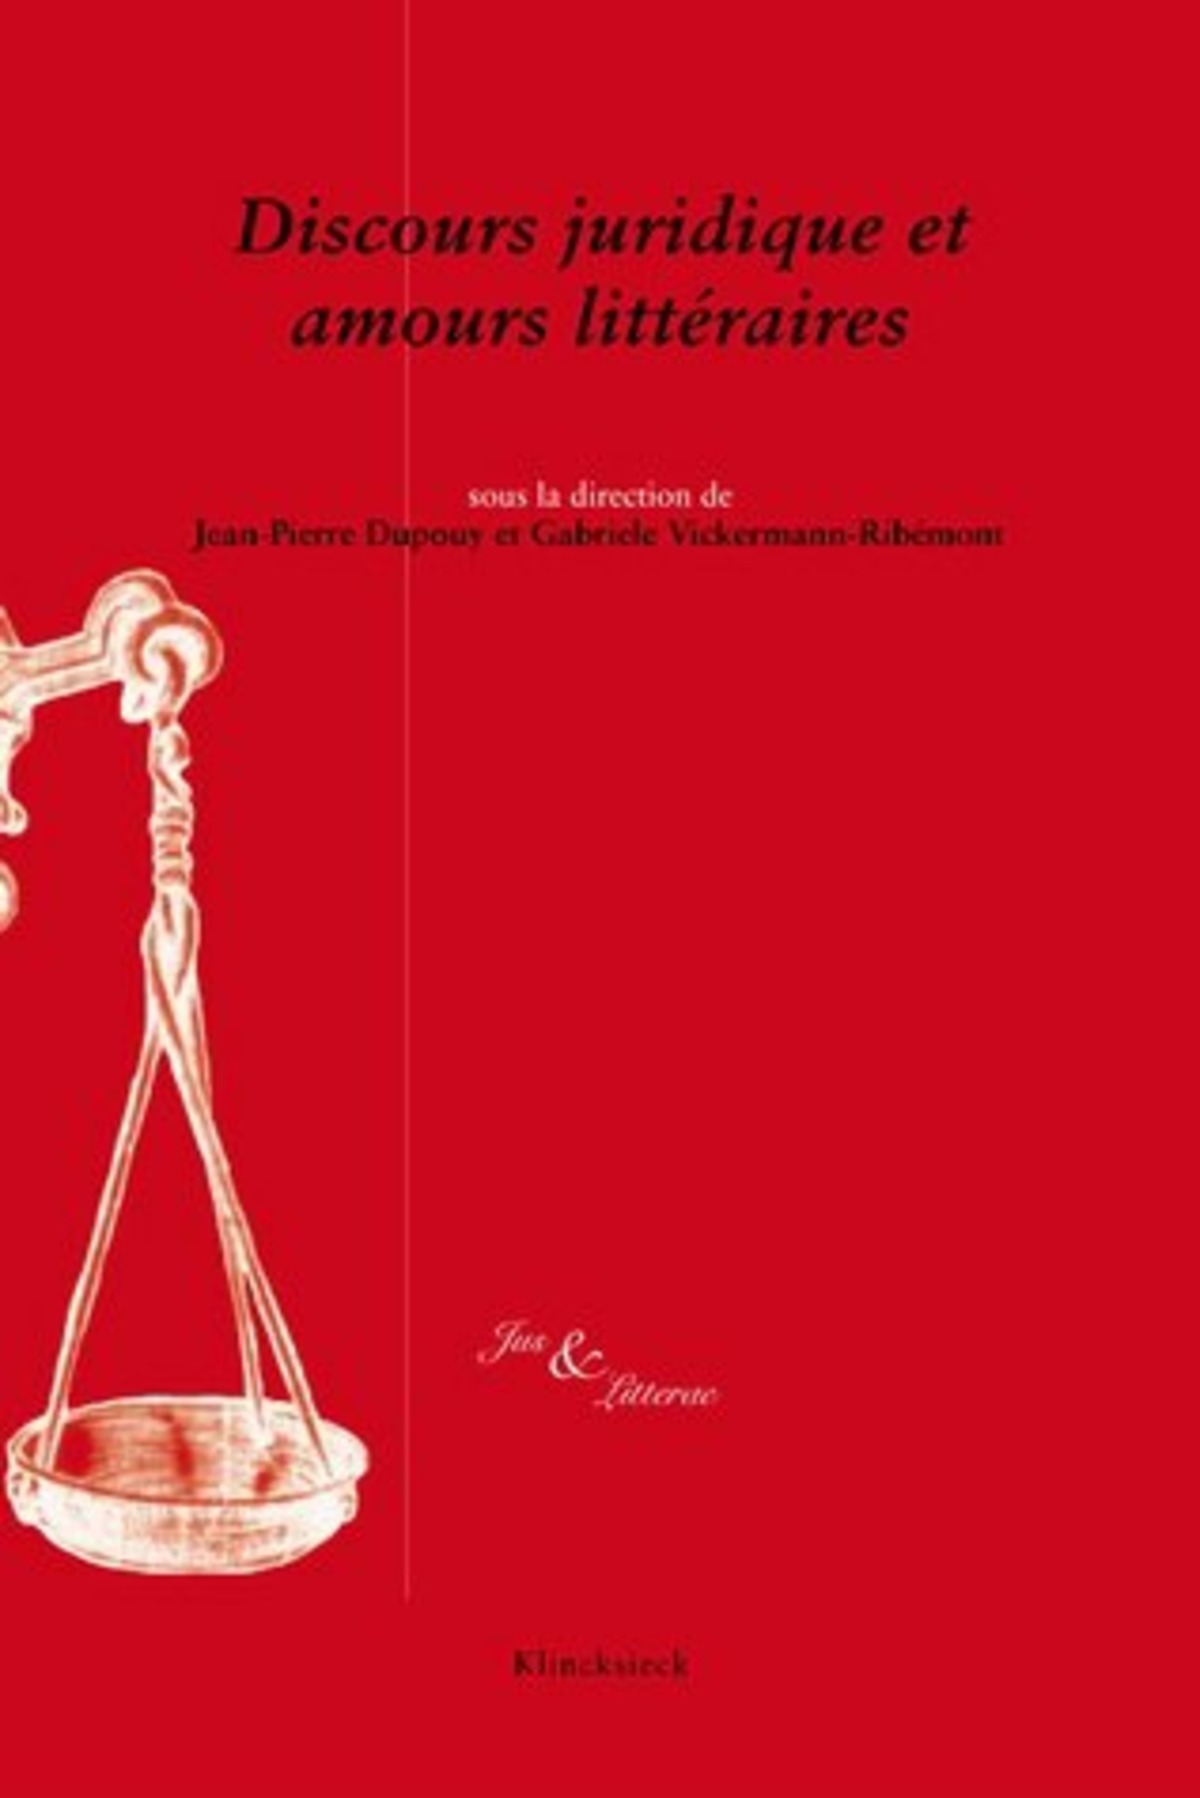 Discours juridique et amours littéraires